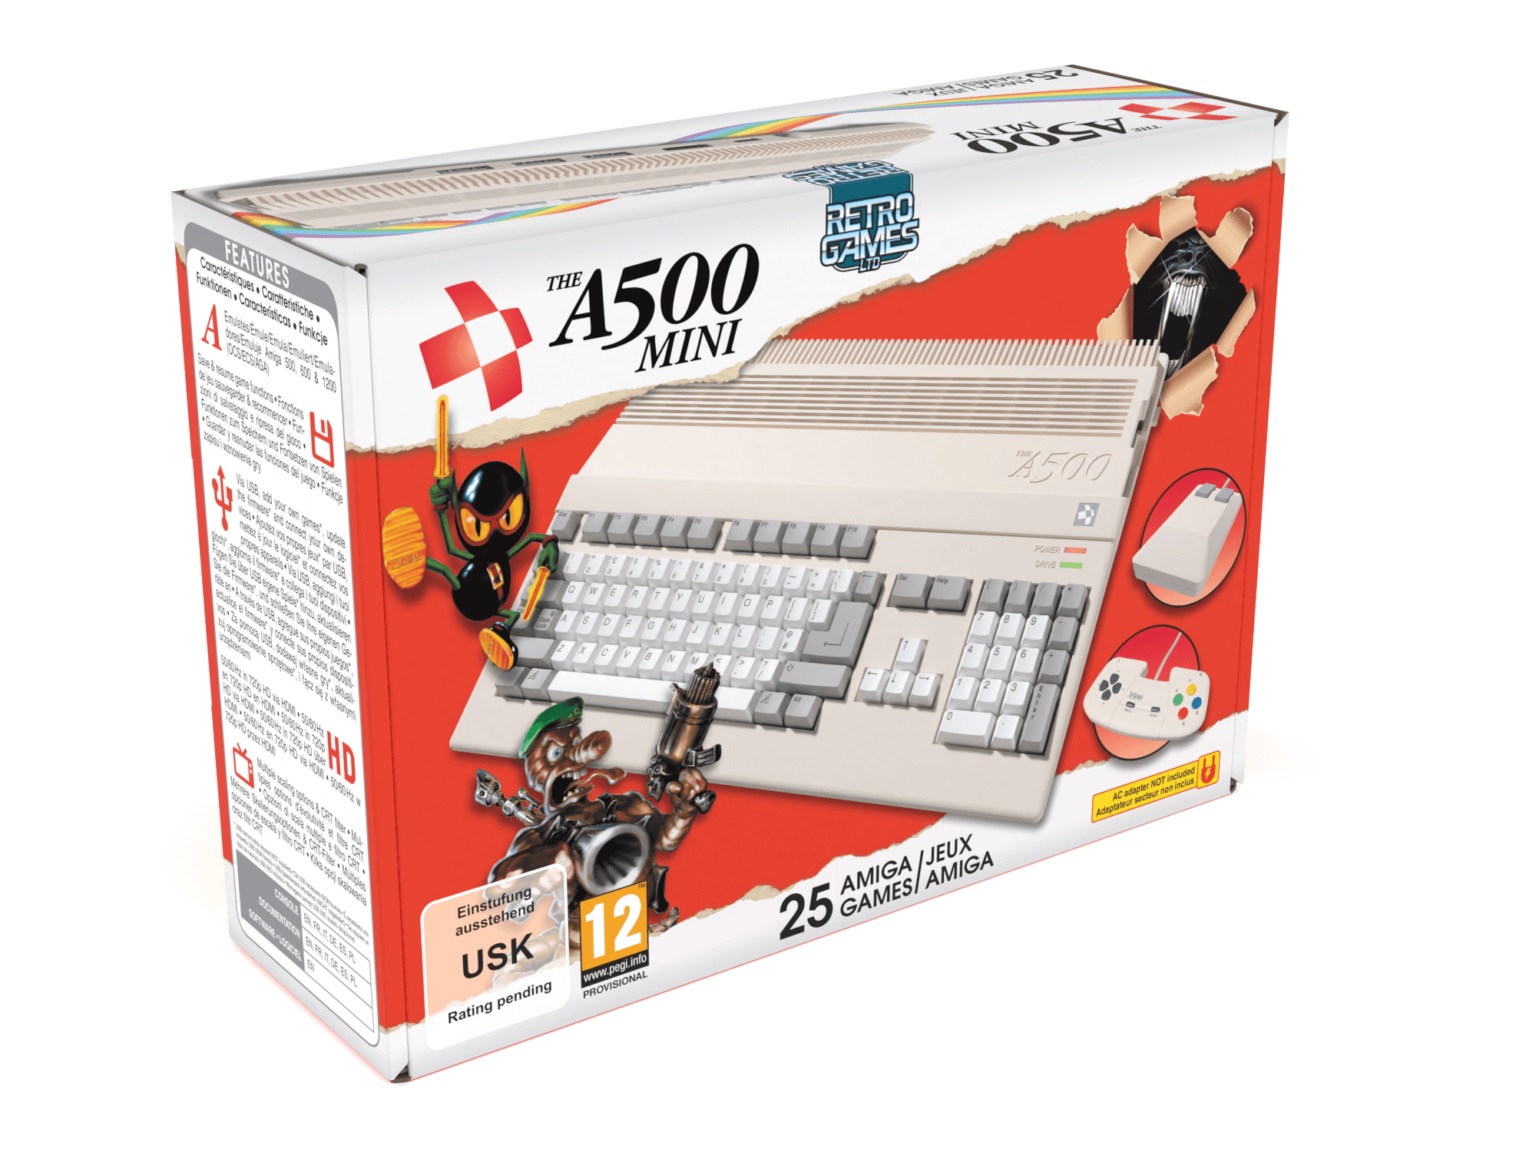 Amiga 500 A500 bosca